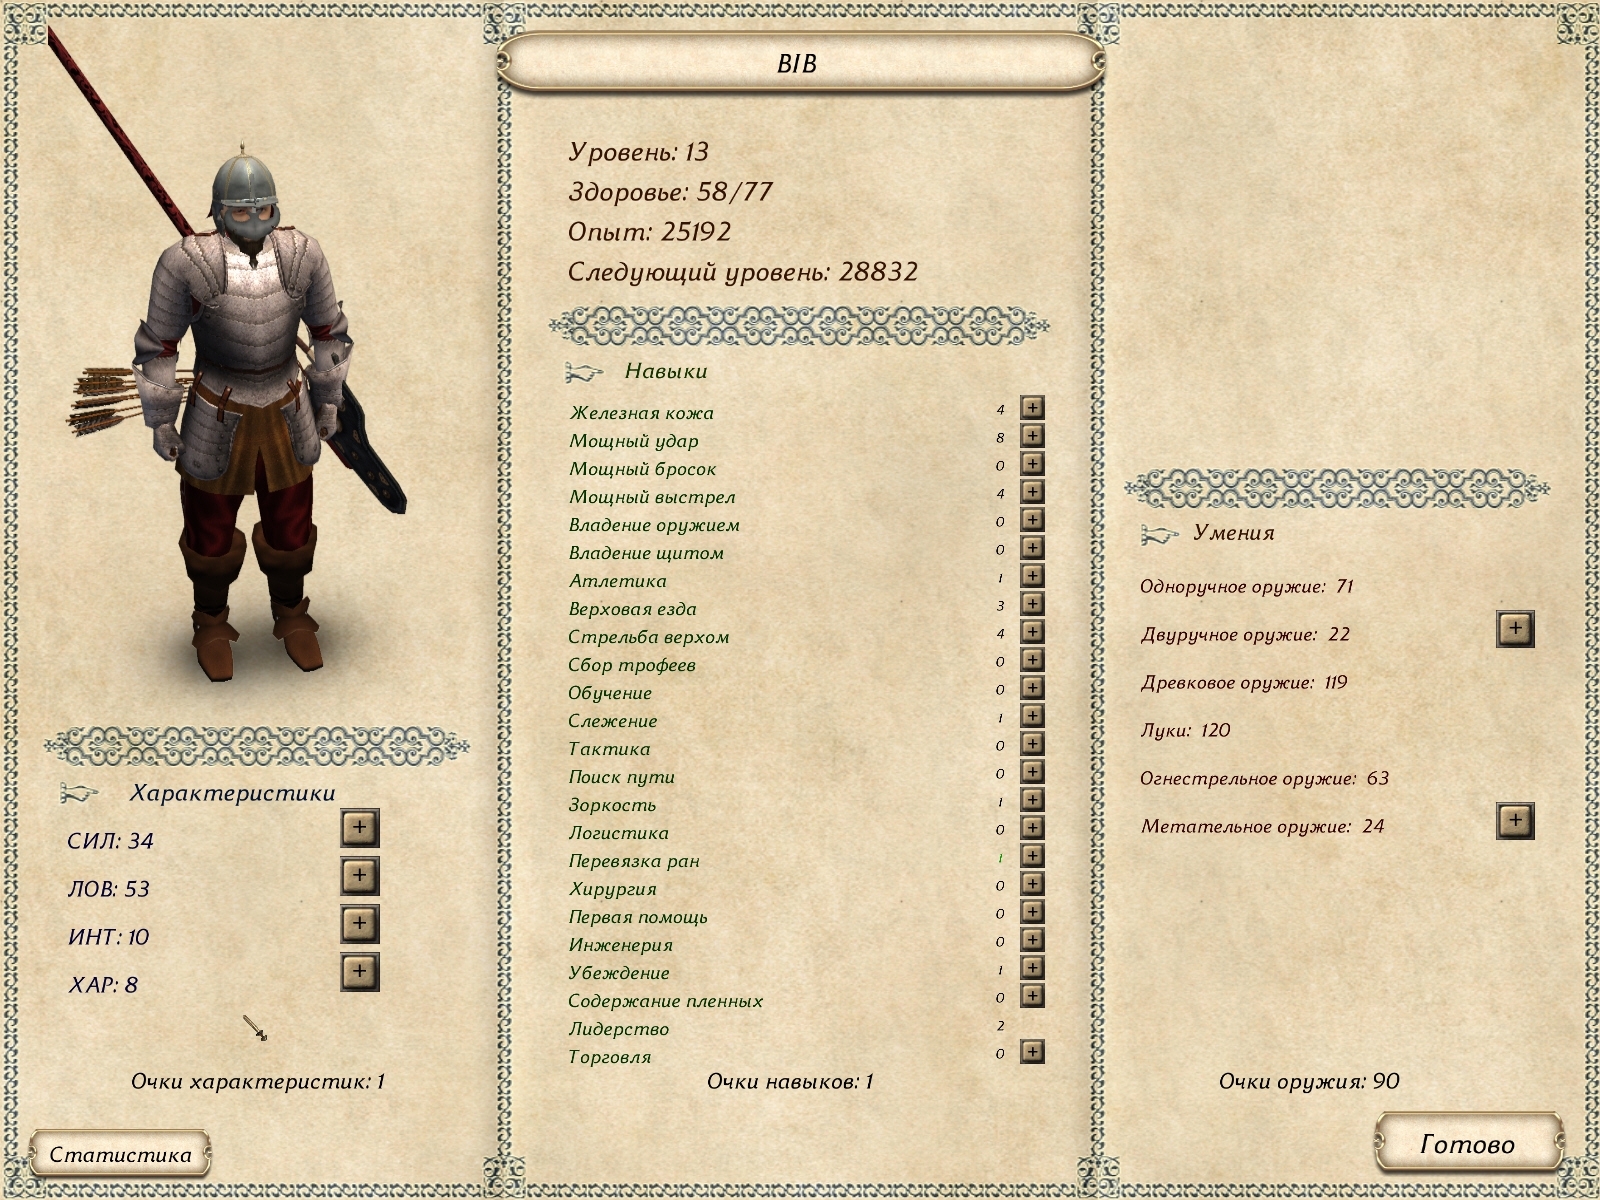 Скриншот из игры Mount & Blade: Огнем и мечом под номером 88